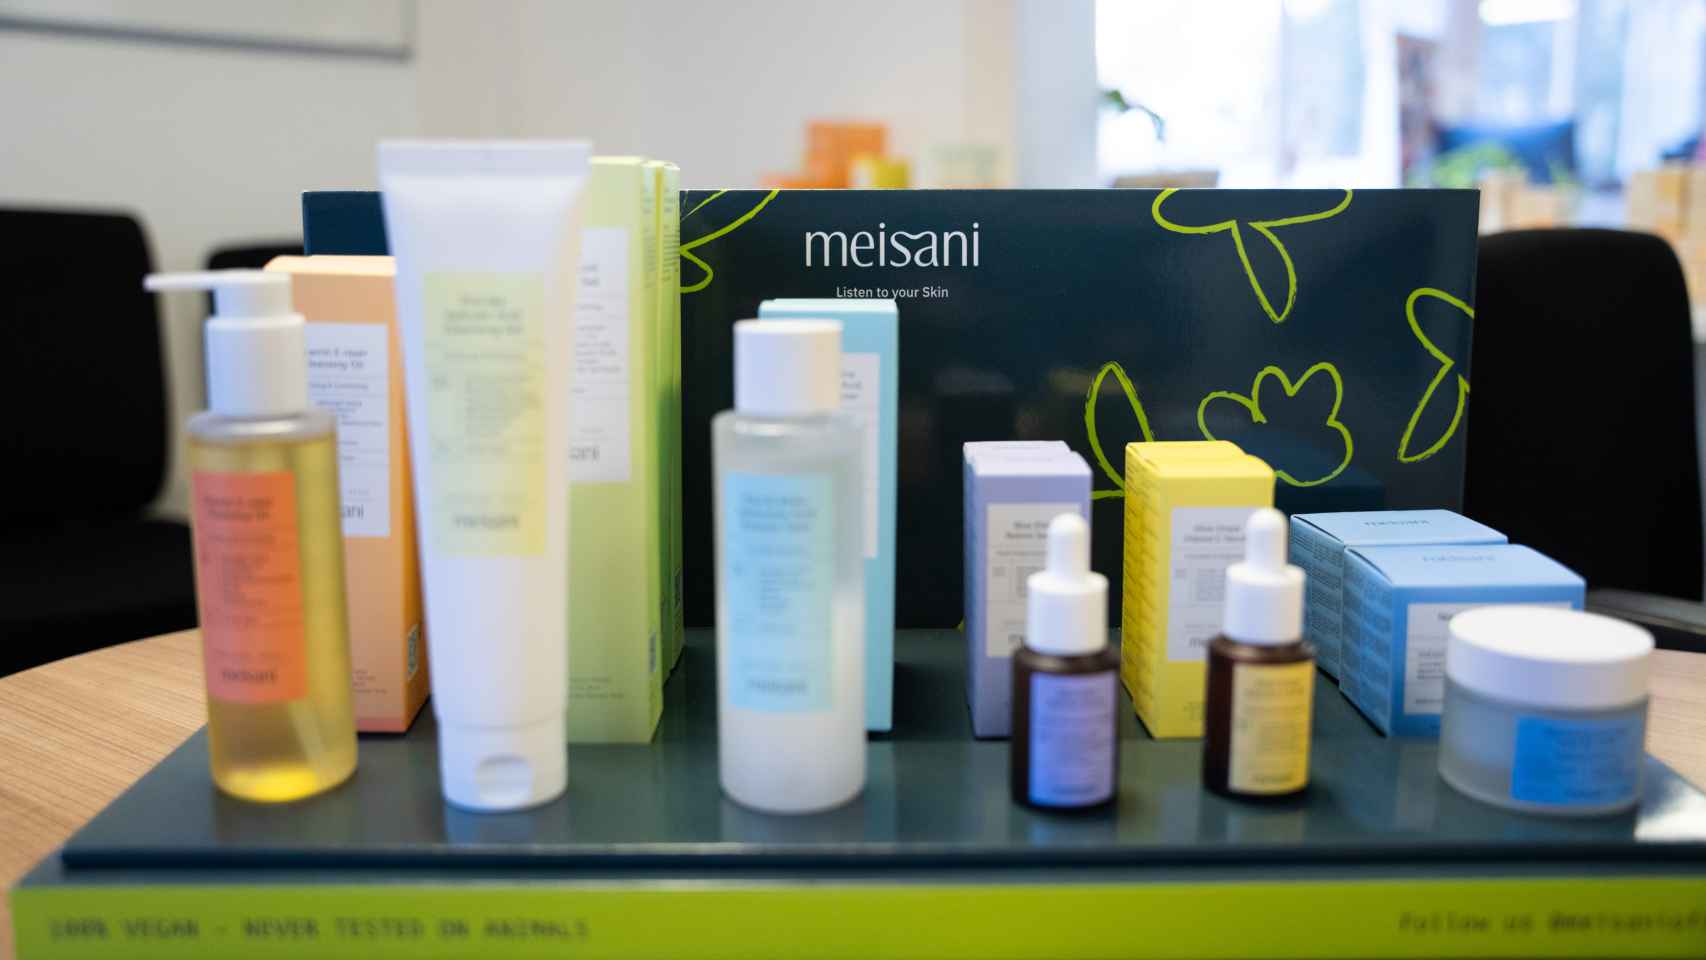 Algunos de los productos de la marca Meisani de Lilin Yang